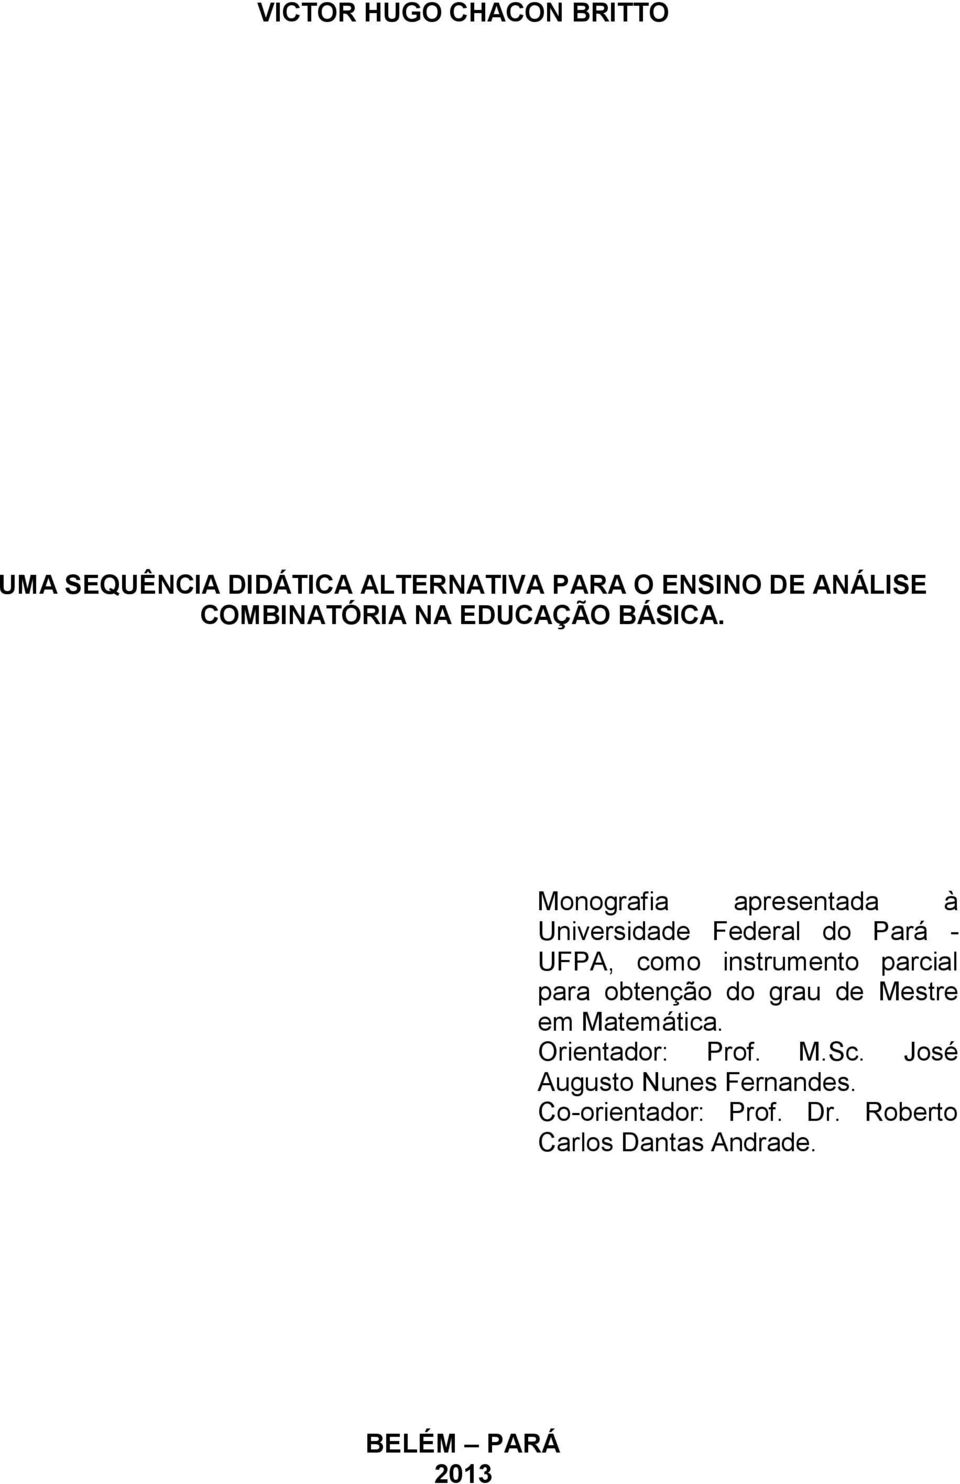 Monografia apresentada à Universidade Federal do Pará - UFPA, como instrumento parcial para